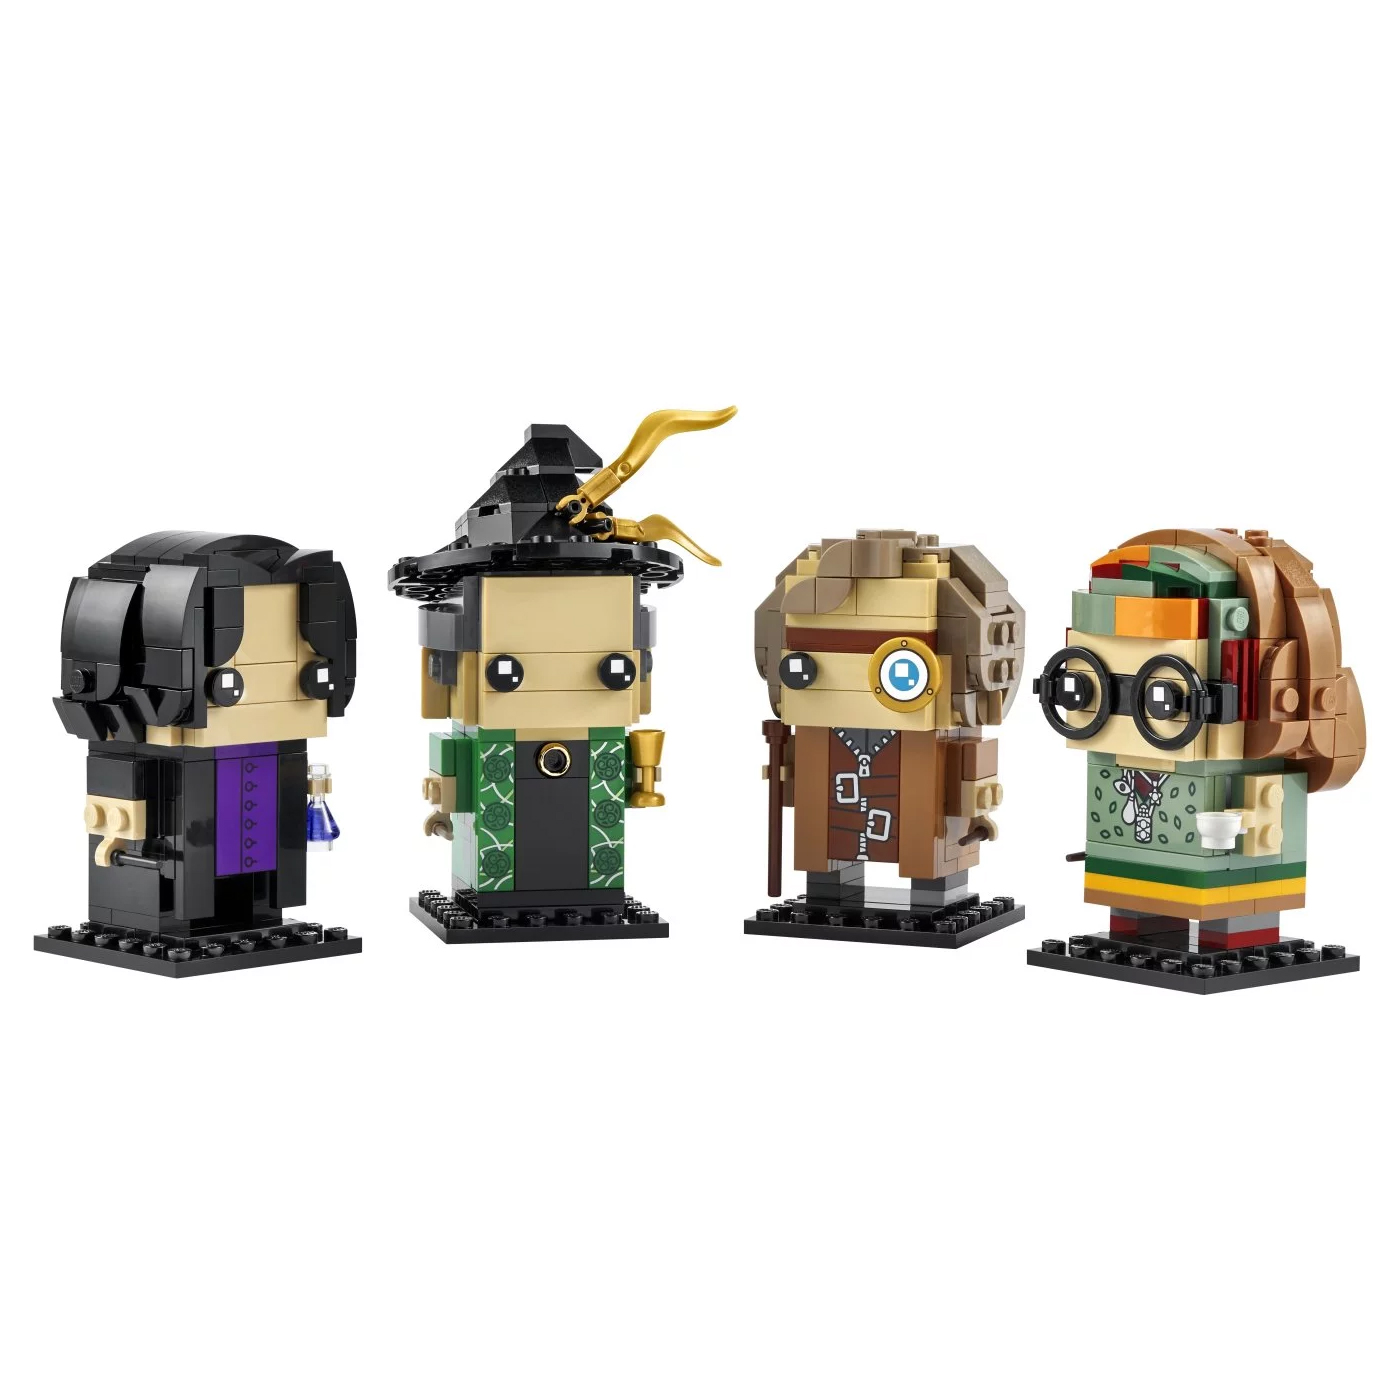 Конструктор Lego BrickHeadz Harry Potter Professors of Hogwarts 40560, 601 деталь конструктор lego brickheadz jake sully